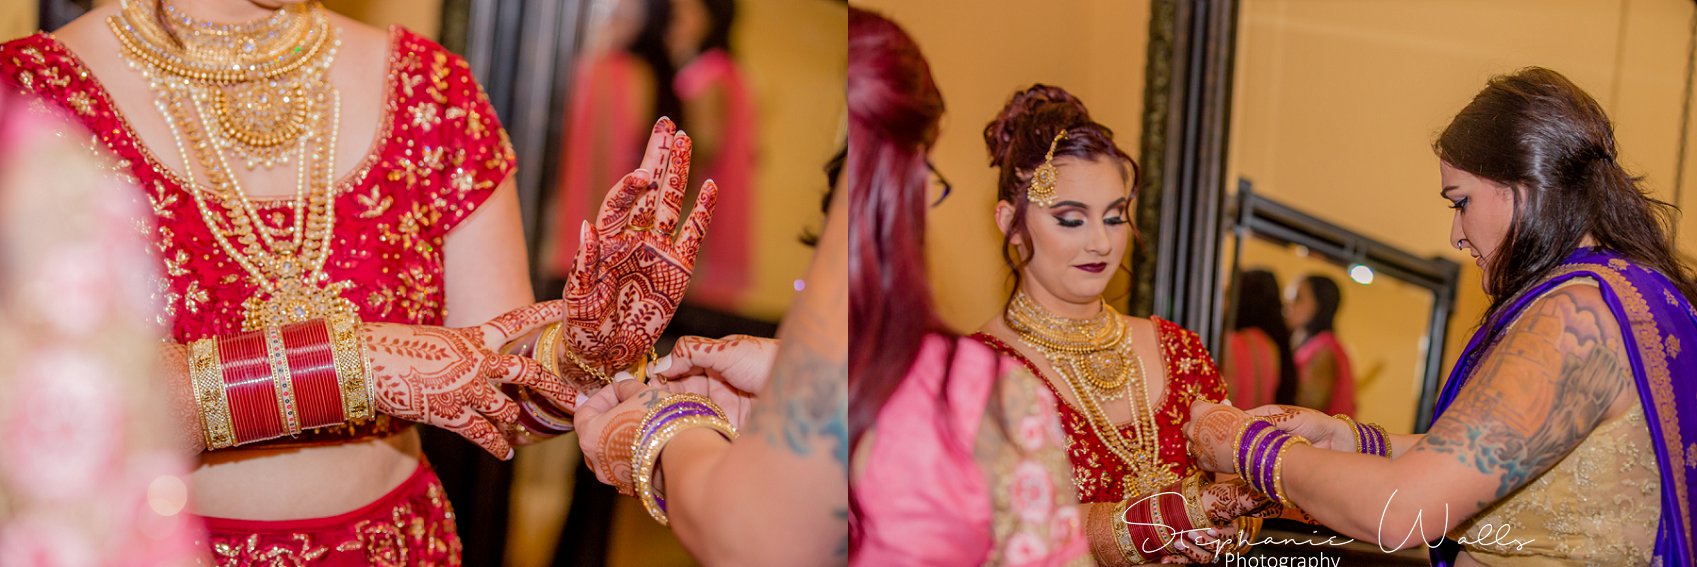 Kaushik 083 Snohomish Fusion Indian Wedding With Megan and Mo